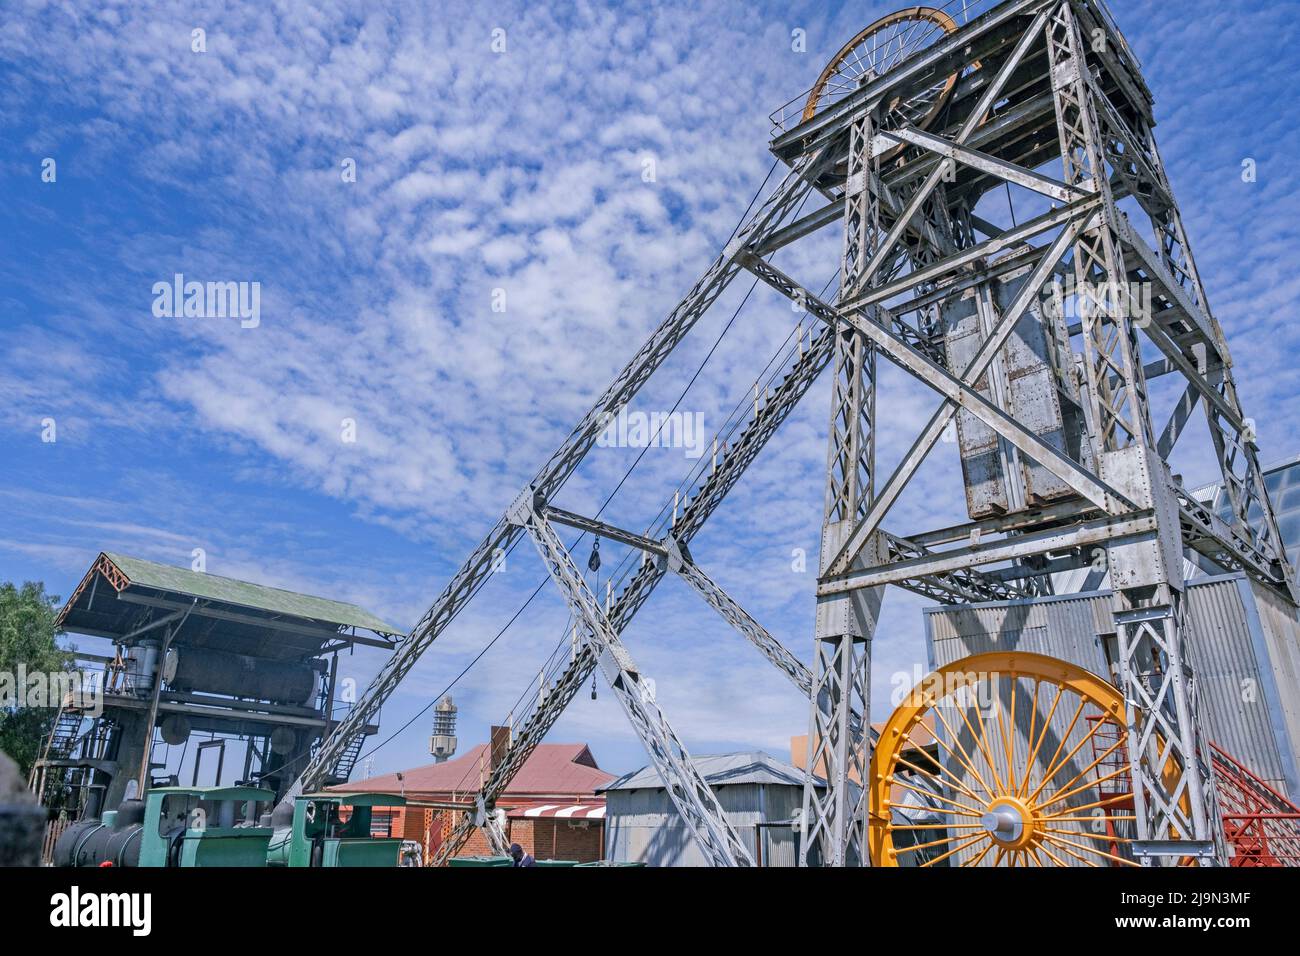 Estructura de cabecera / torre sinuosa / estructura de elevación del Big Hole y el Open Mine Museum en Kimberley, Frances Baard, Provincia del Cabo Norte, Sudáfrica Foto de stock